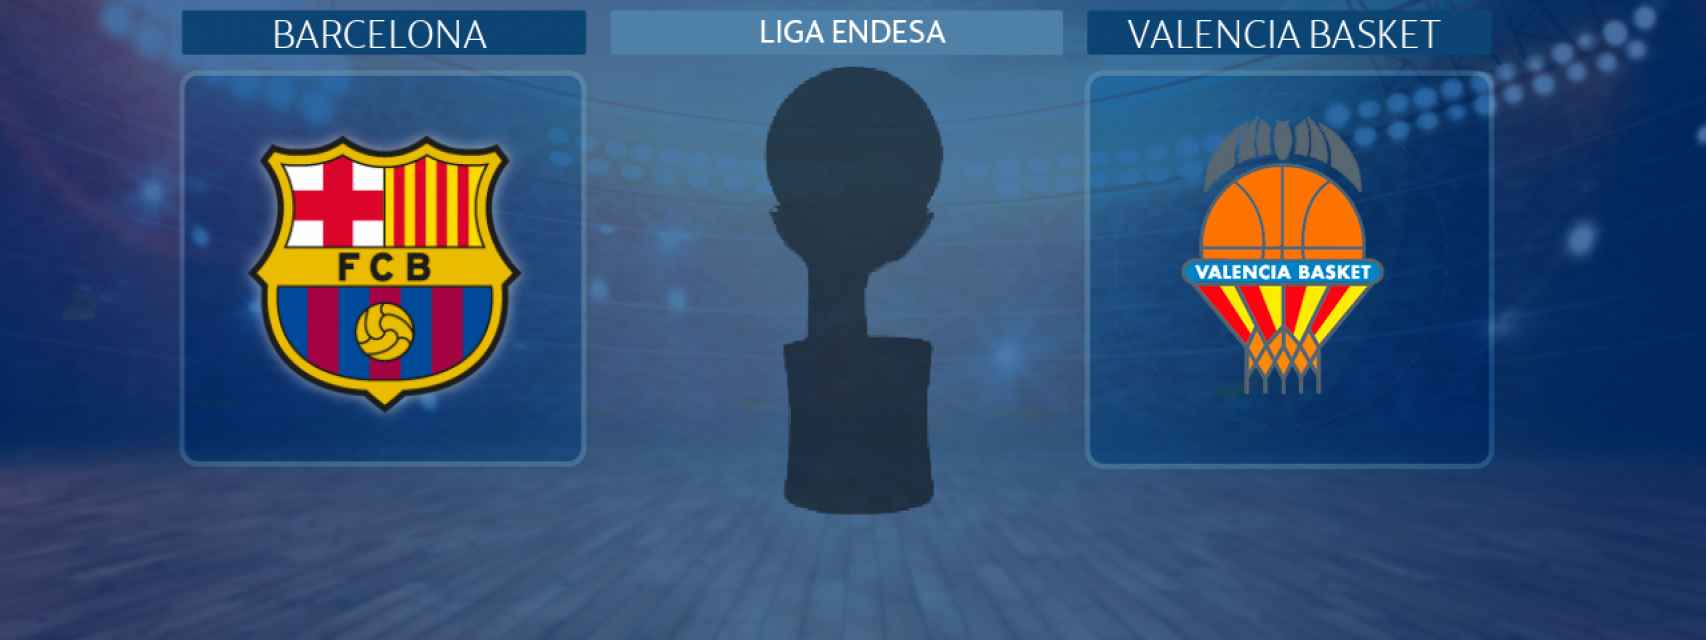 Barcelona - Valencia Basket, partido de la Liga Endesa